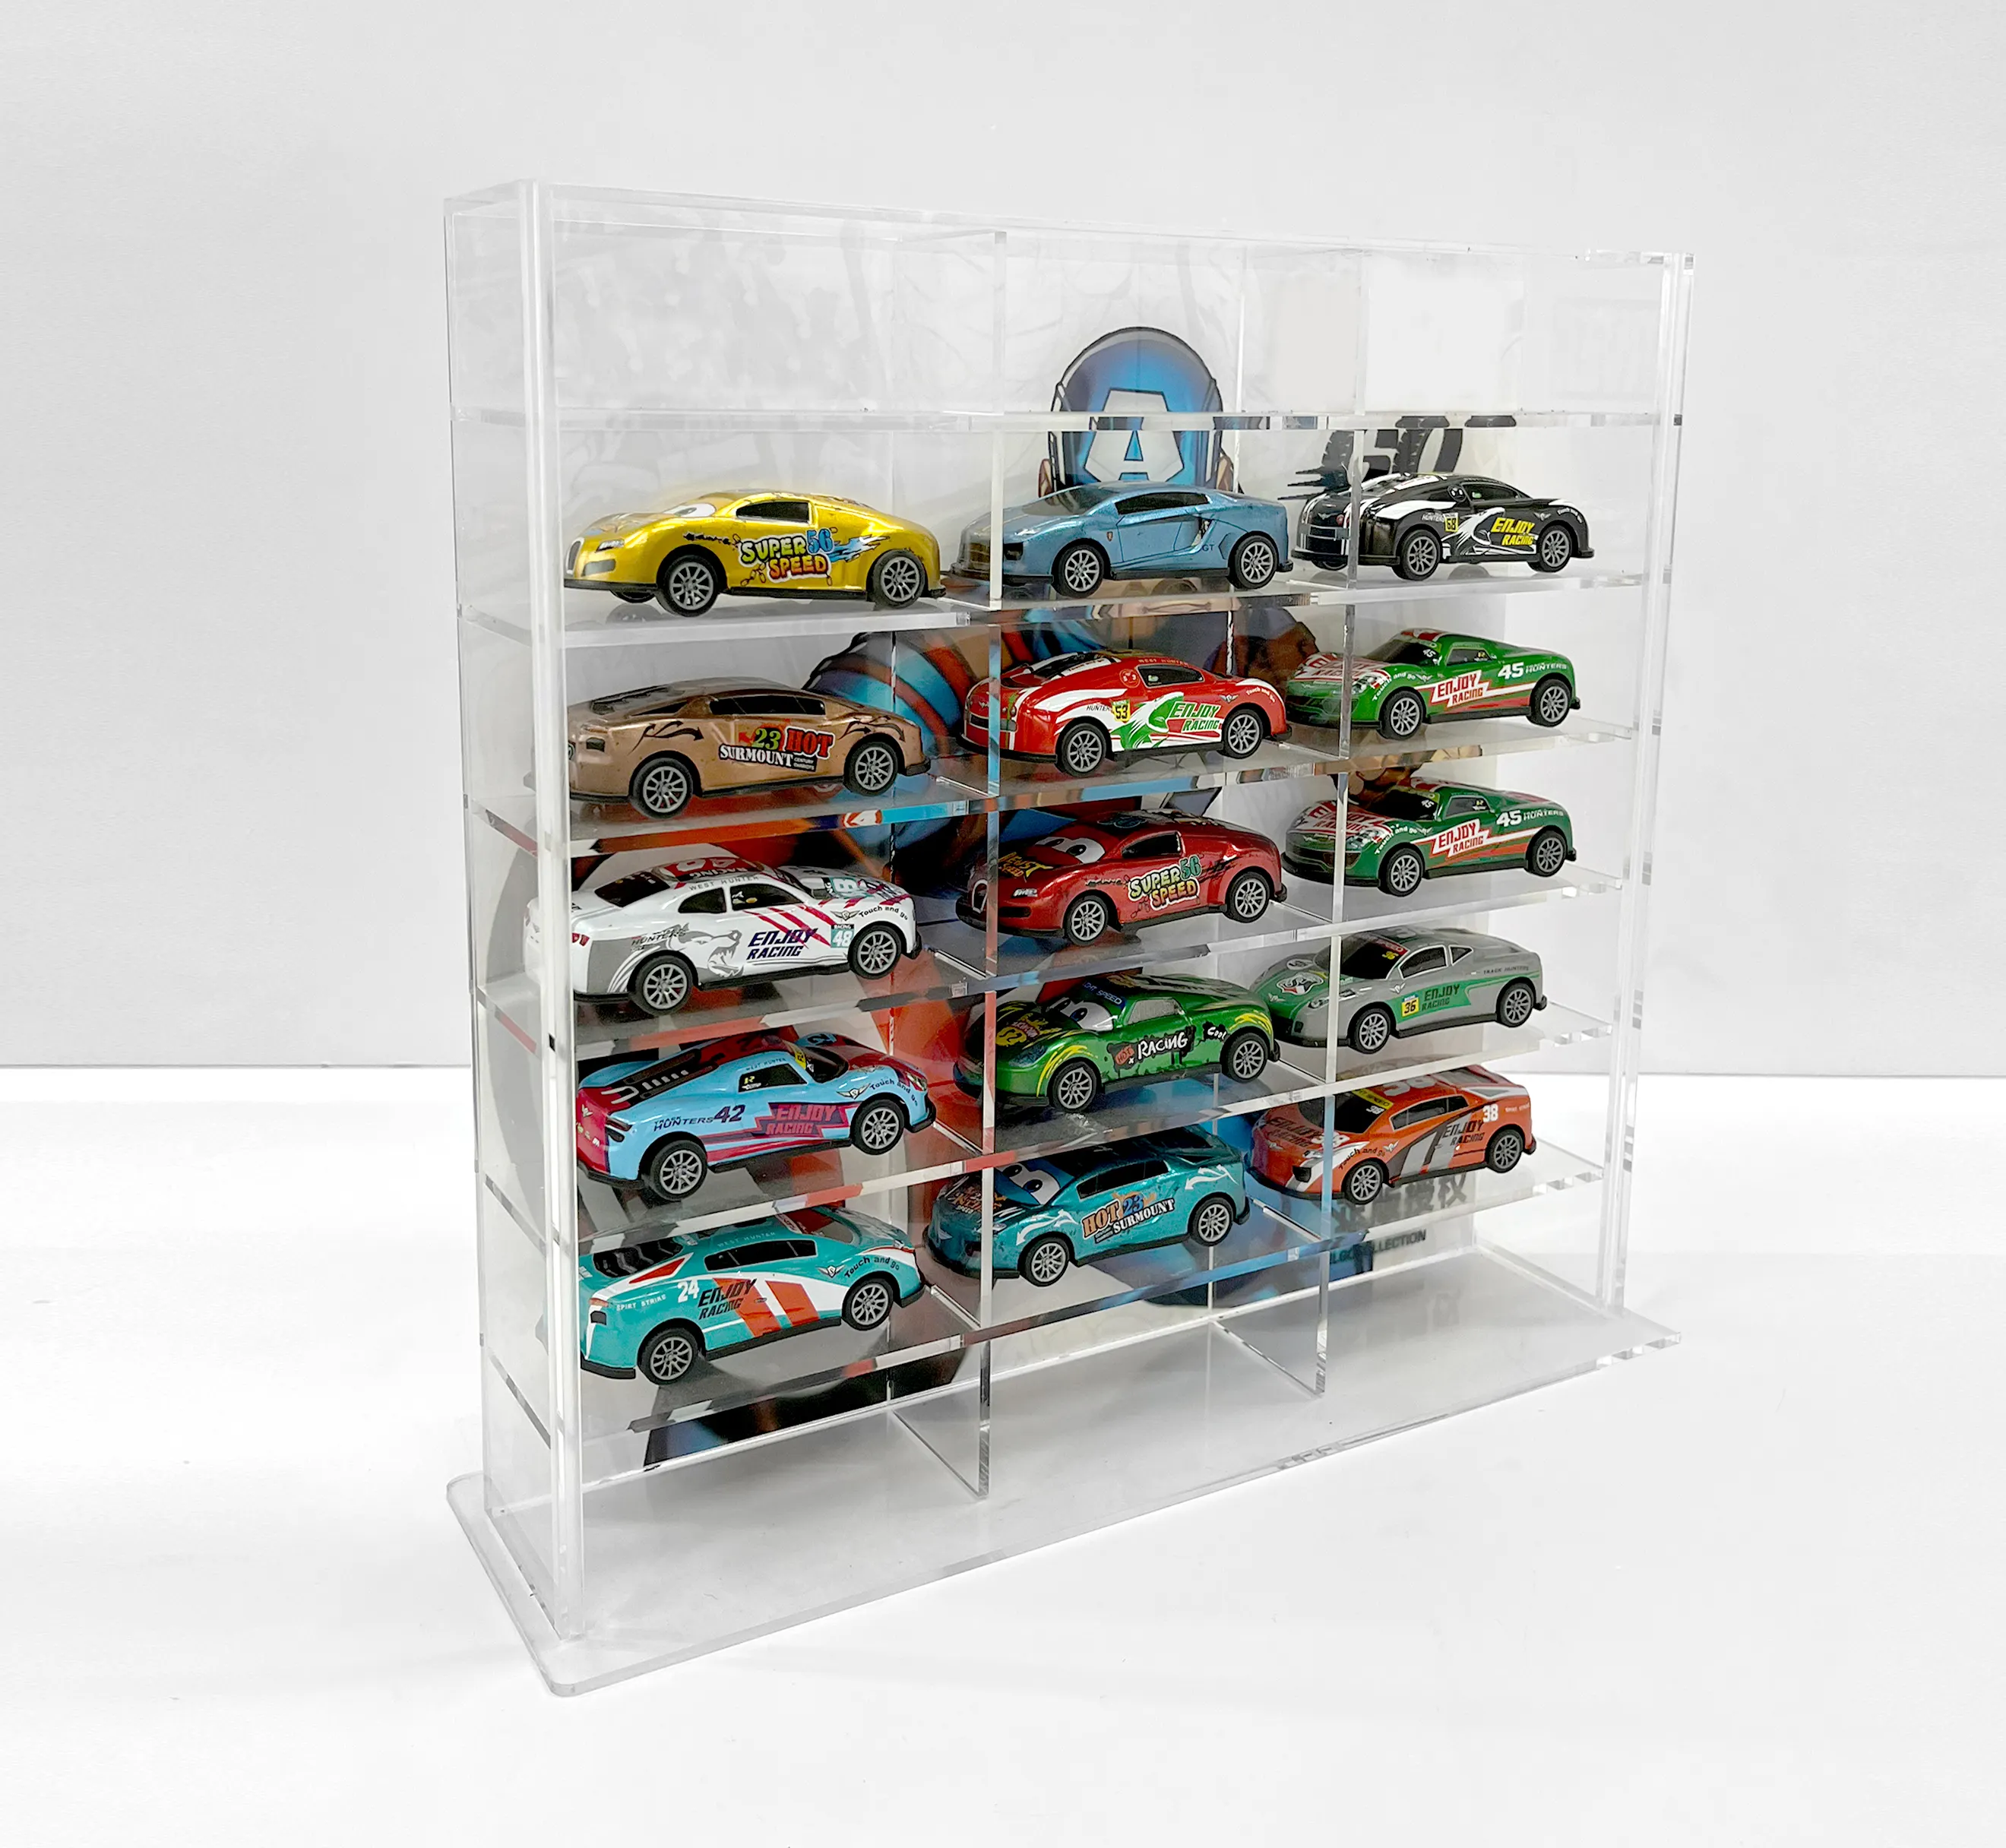 Crylic-estante de exhibición personalizado para coche, expositor para muñeca de juguete con rejilla múltiple a prueba de polvo